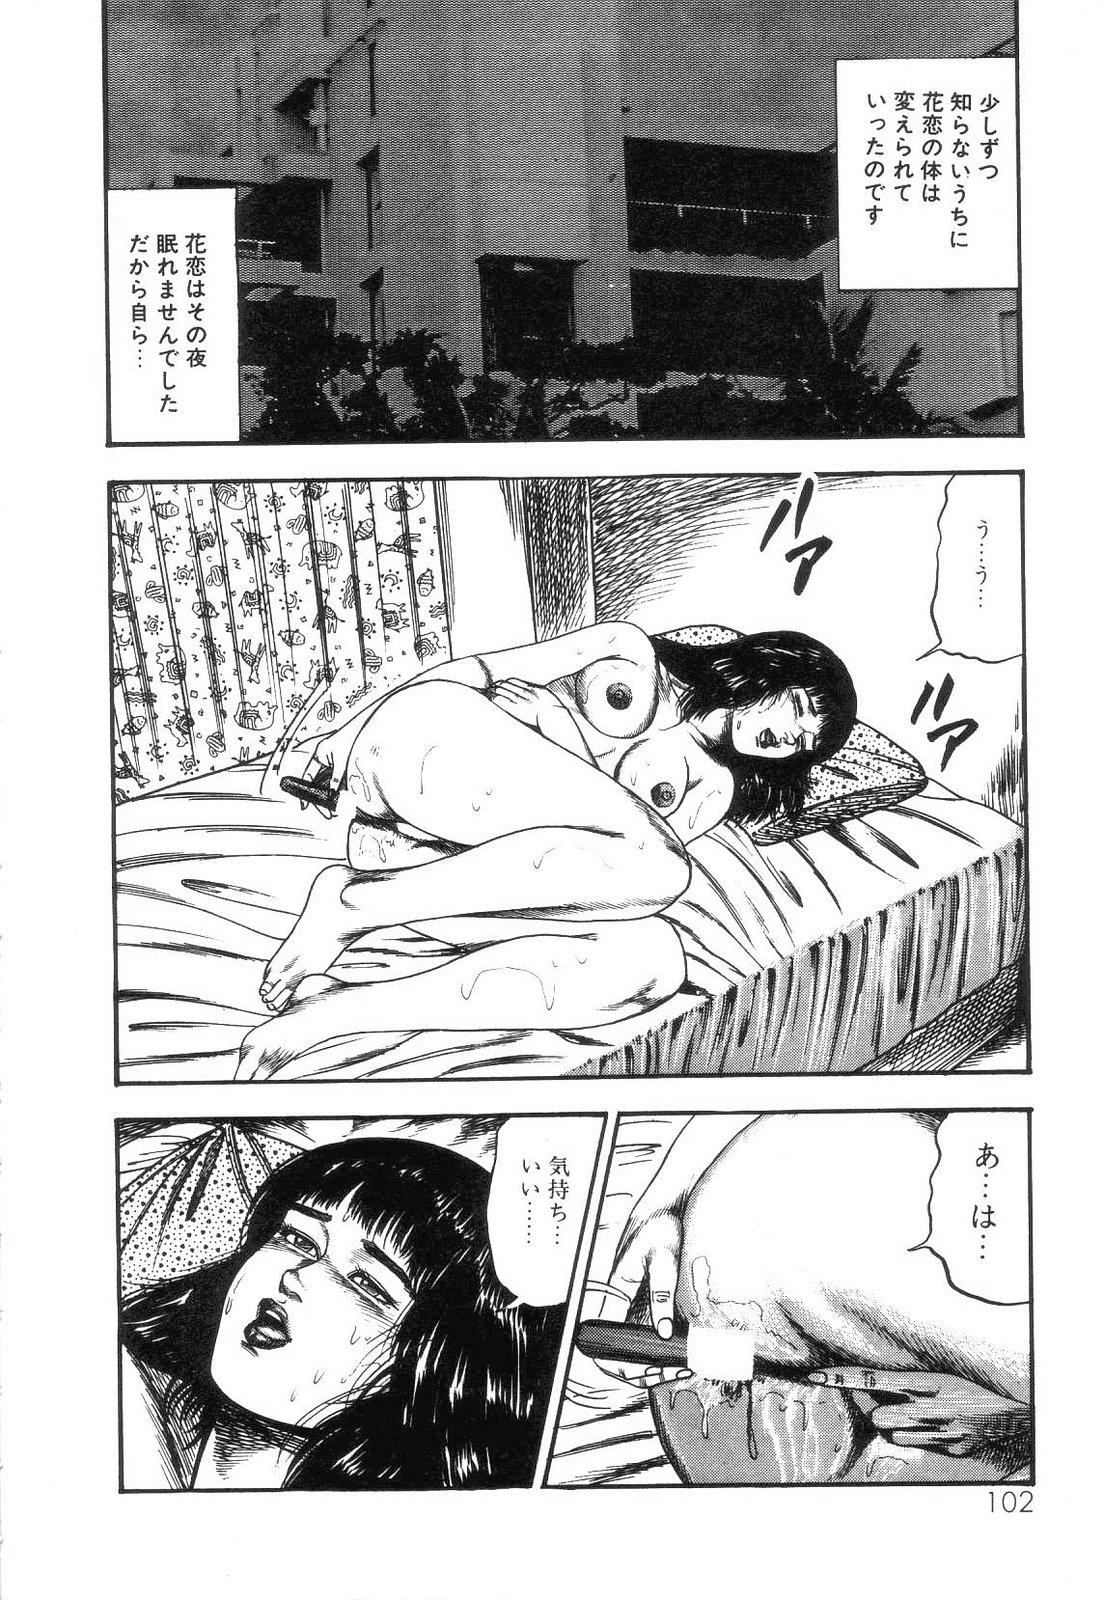 Shiro no Mokushiroku Vol. 4 - Bichiku Karen no Shou 103